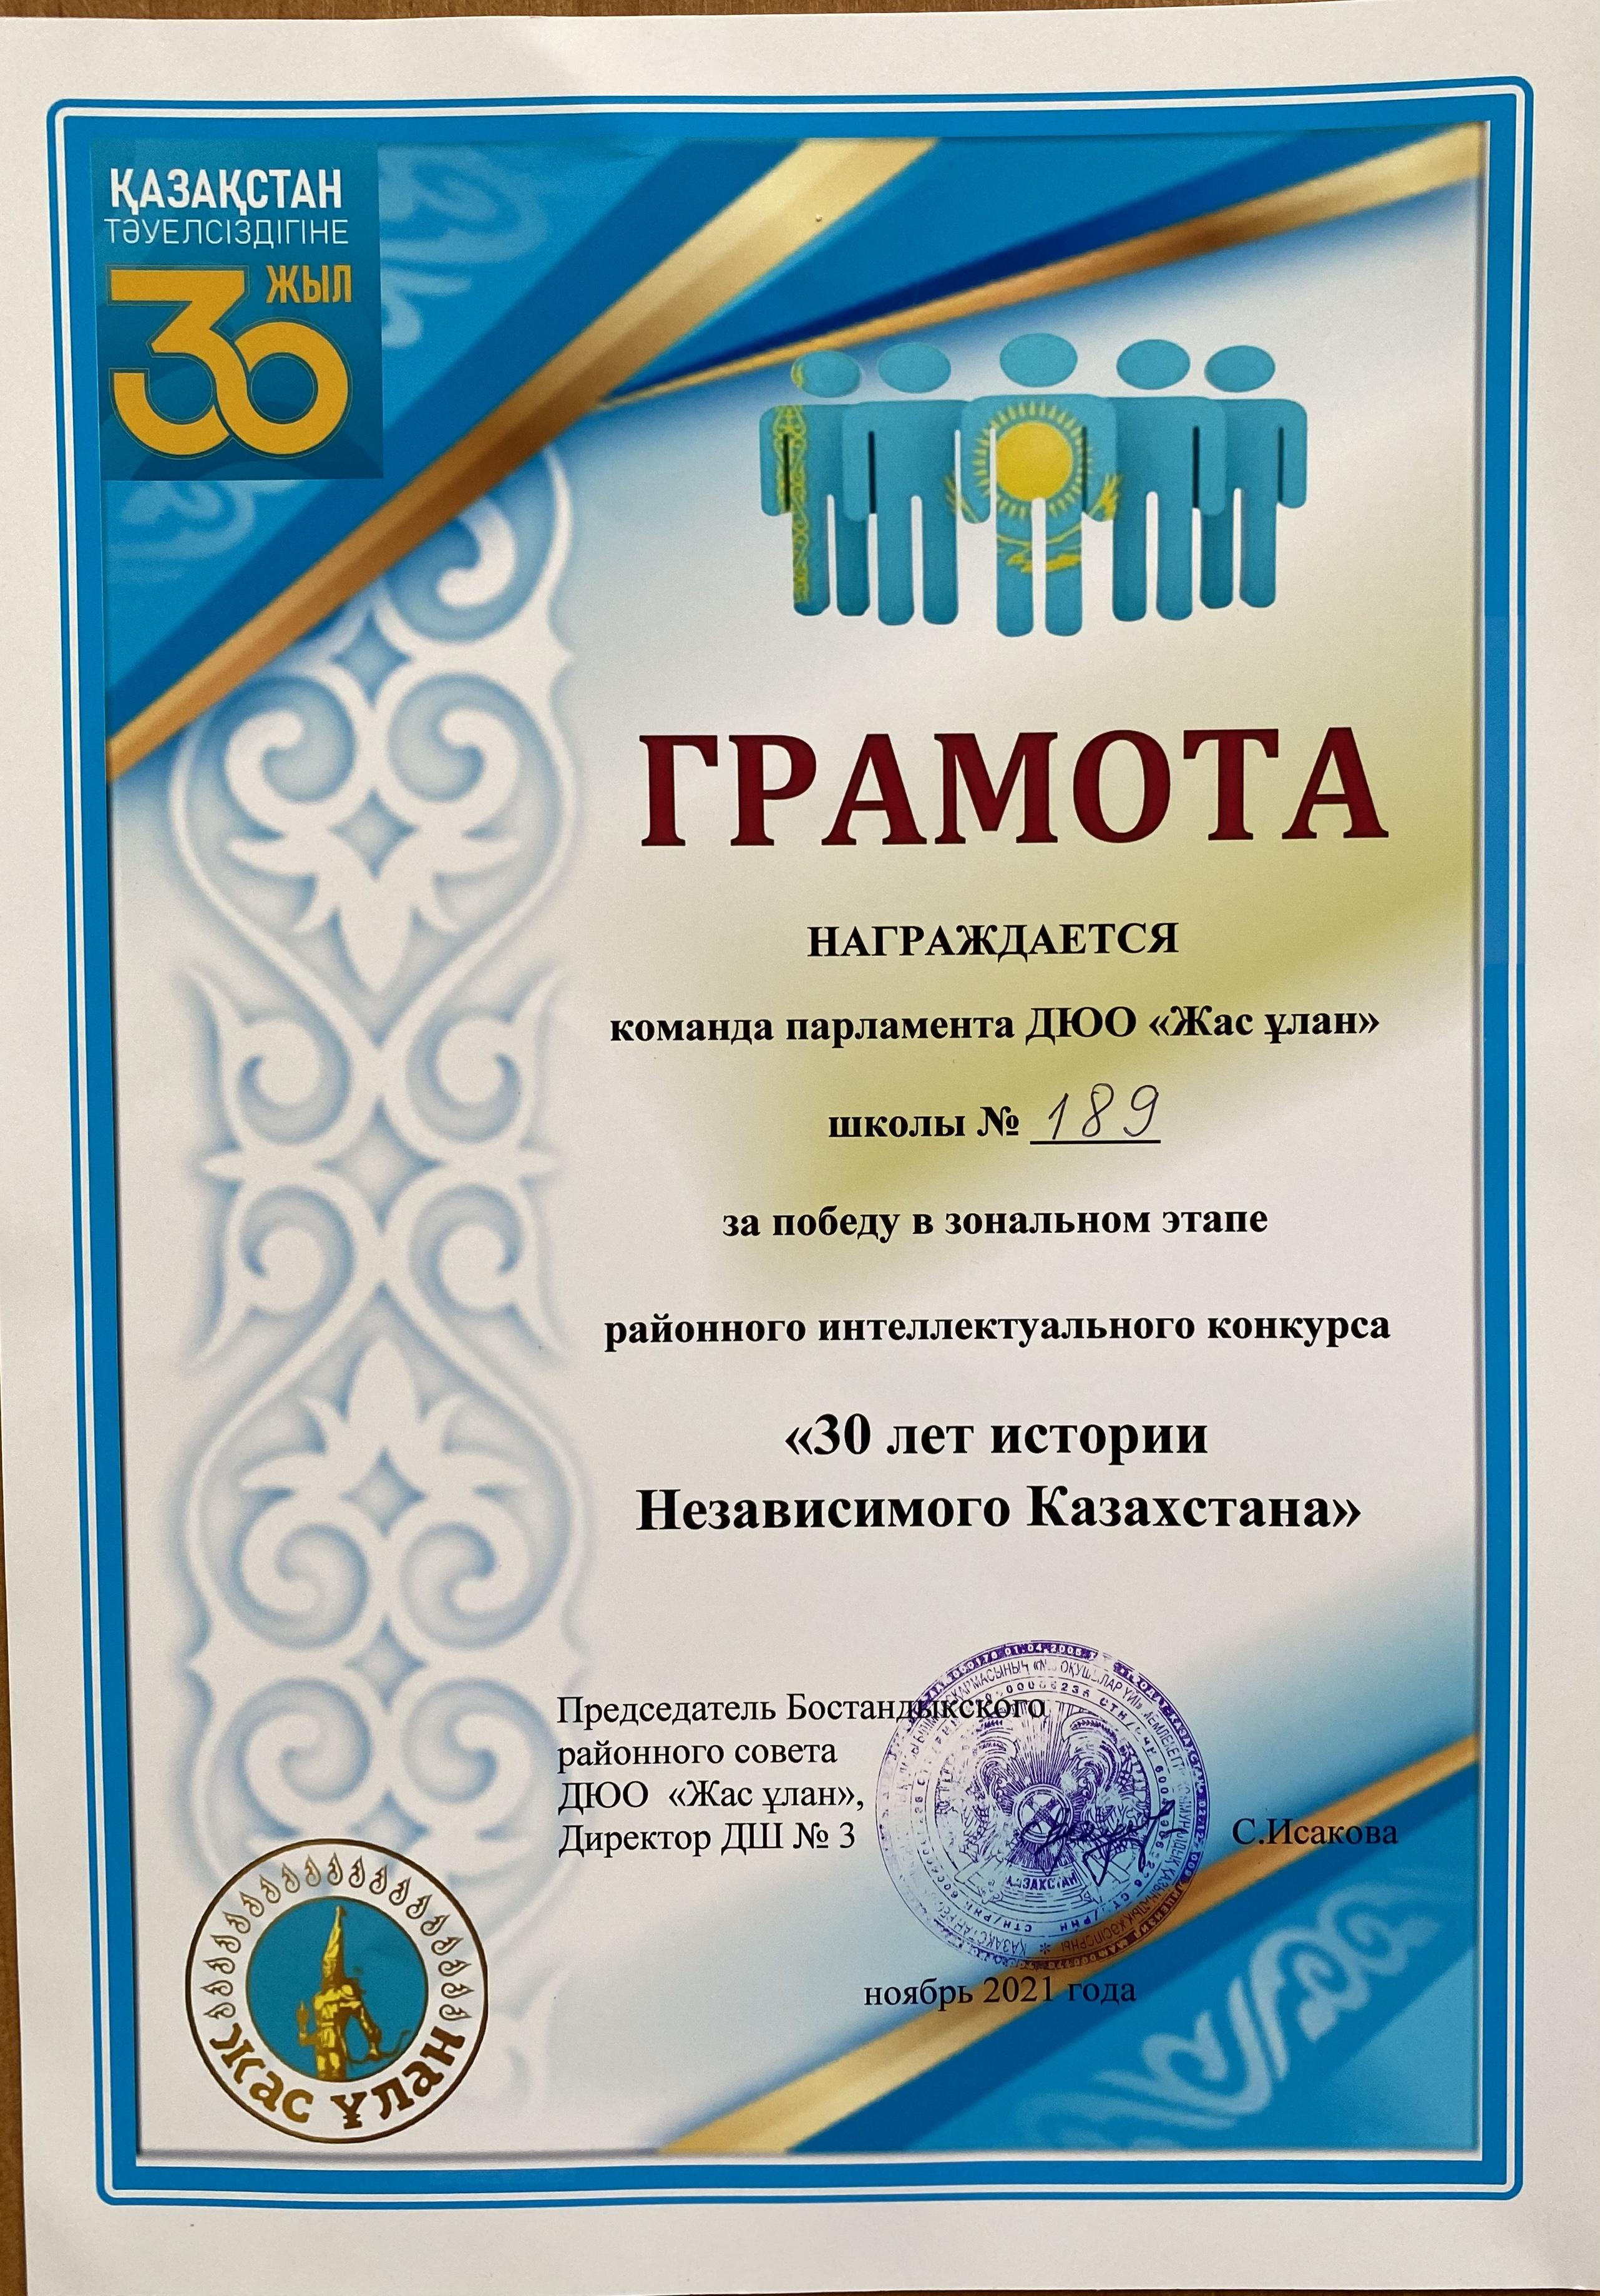 Районный Интеллектуальный конкурс «30 лет истории Независимого Казахстана»